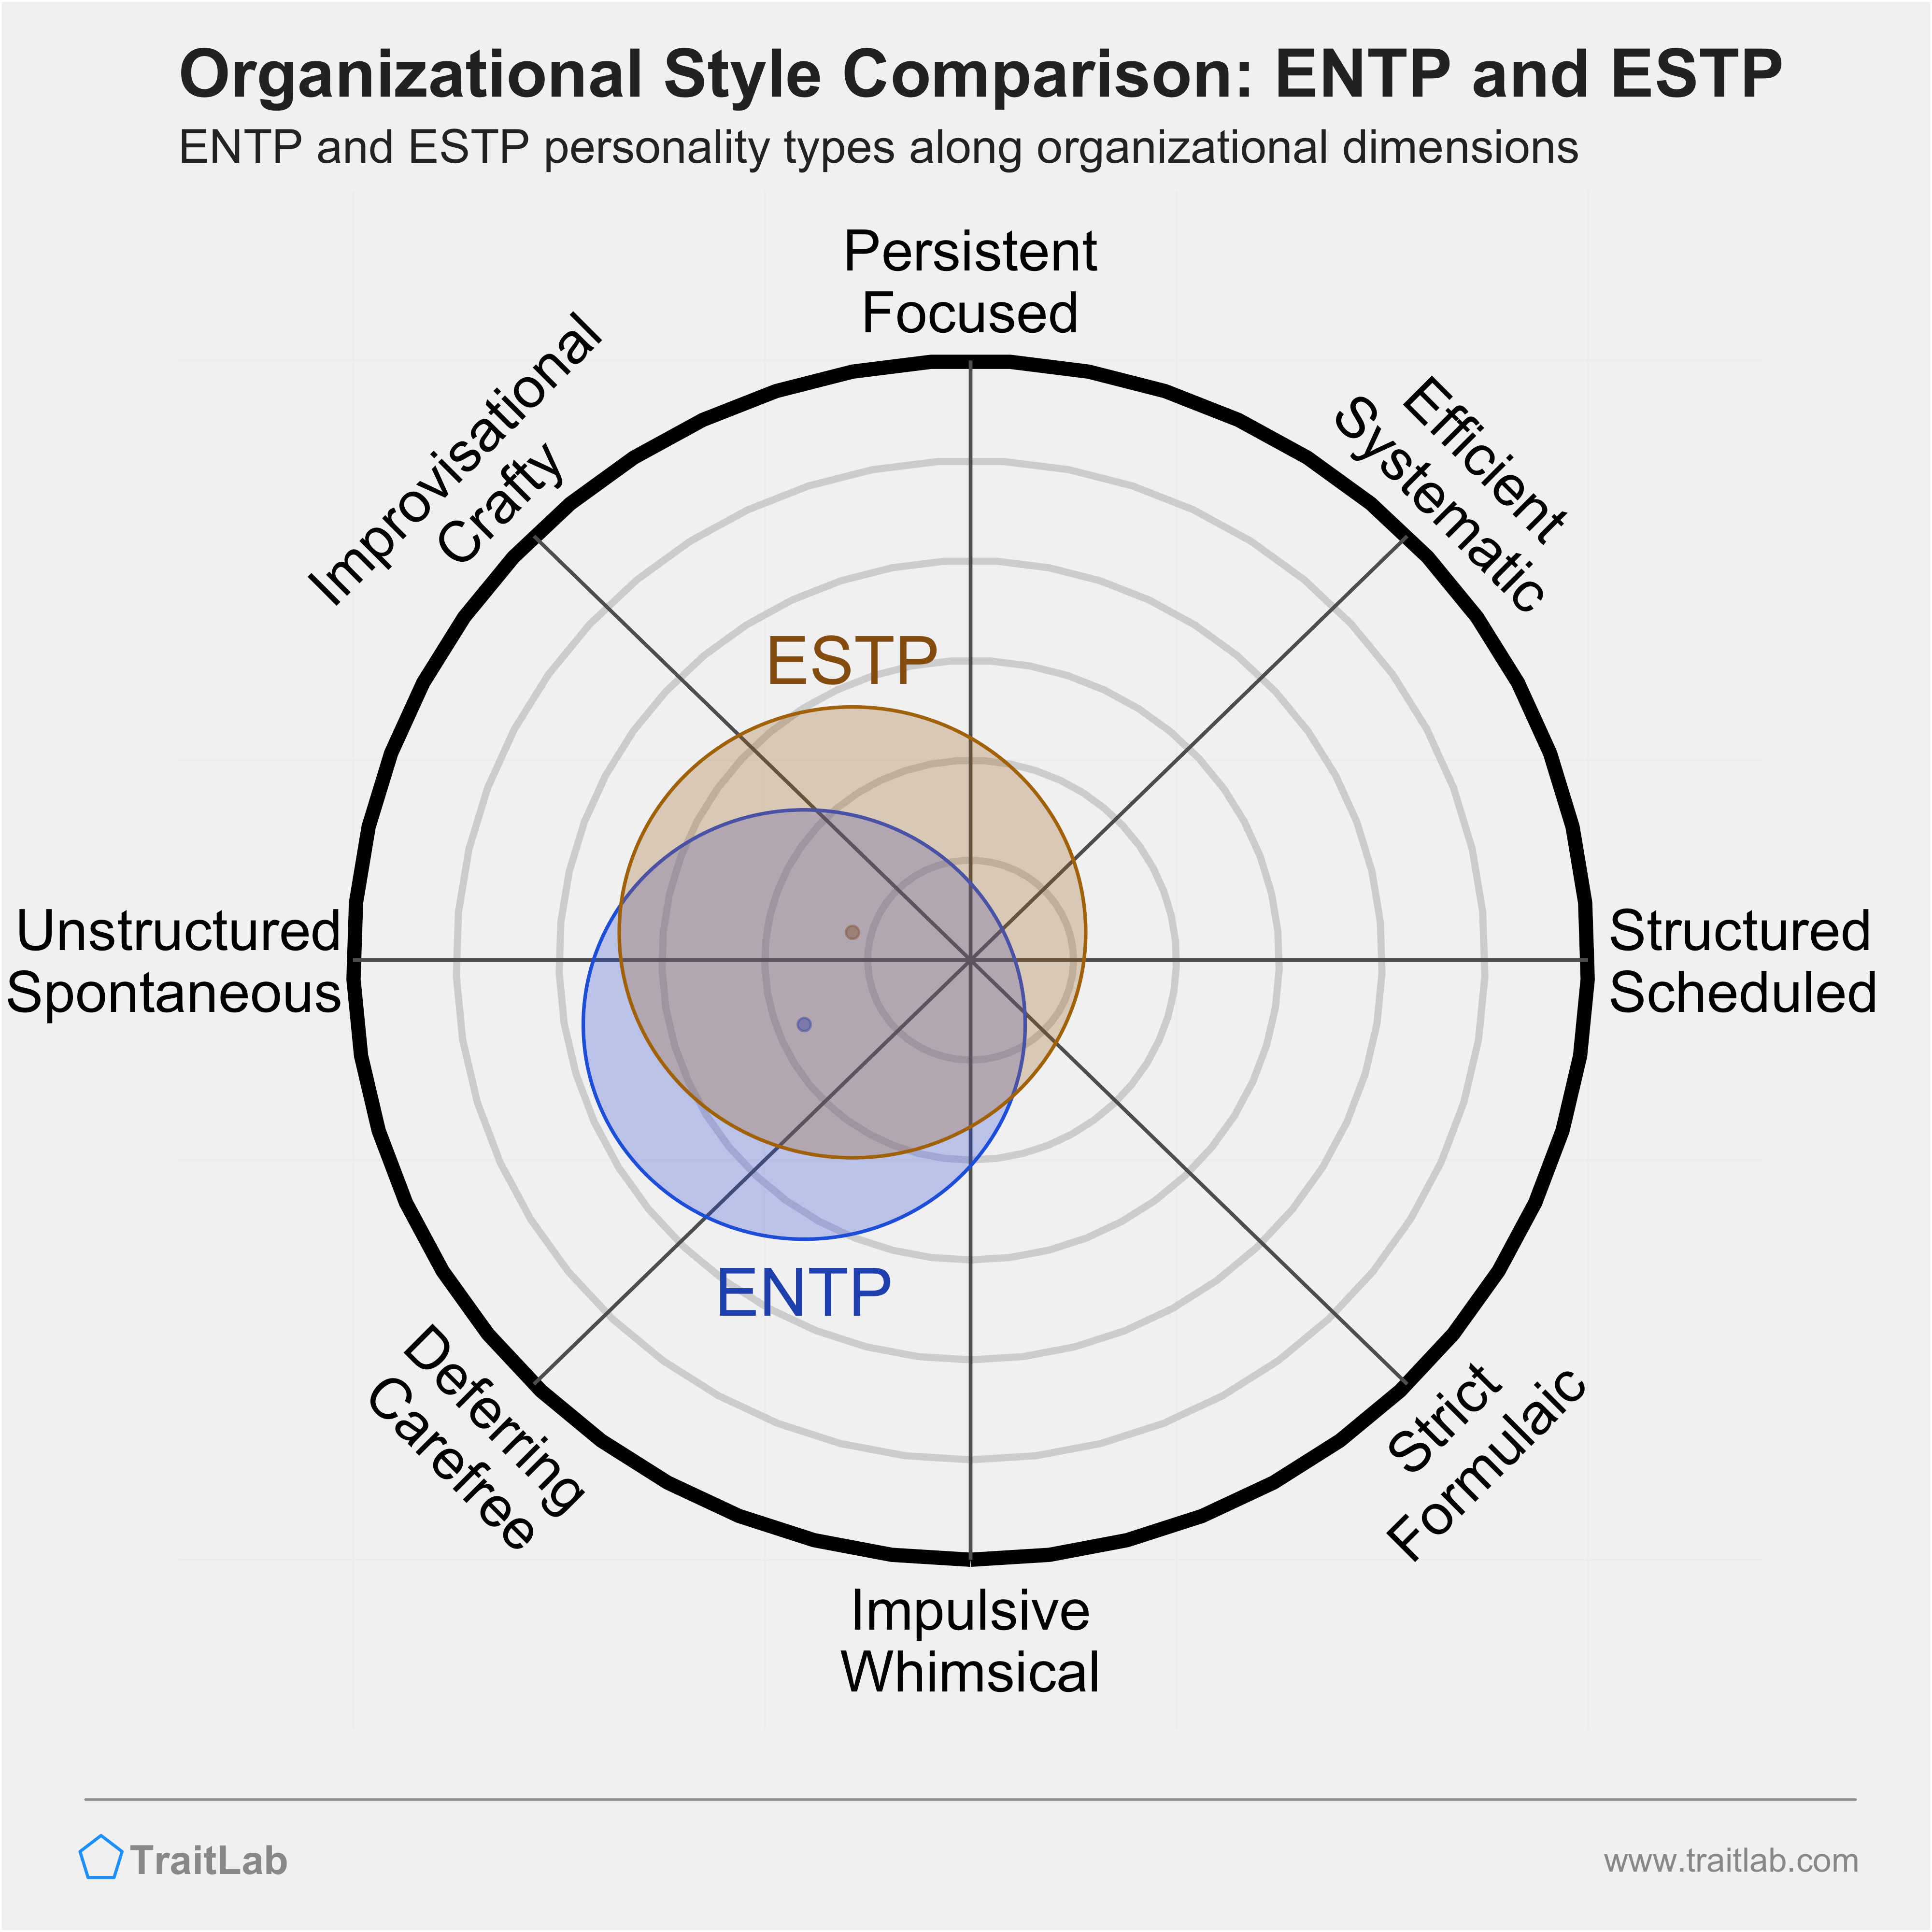 ENTP and ESTP comparison across organizational dimensions